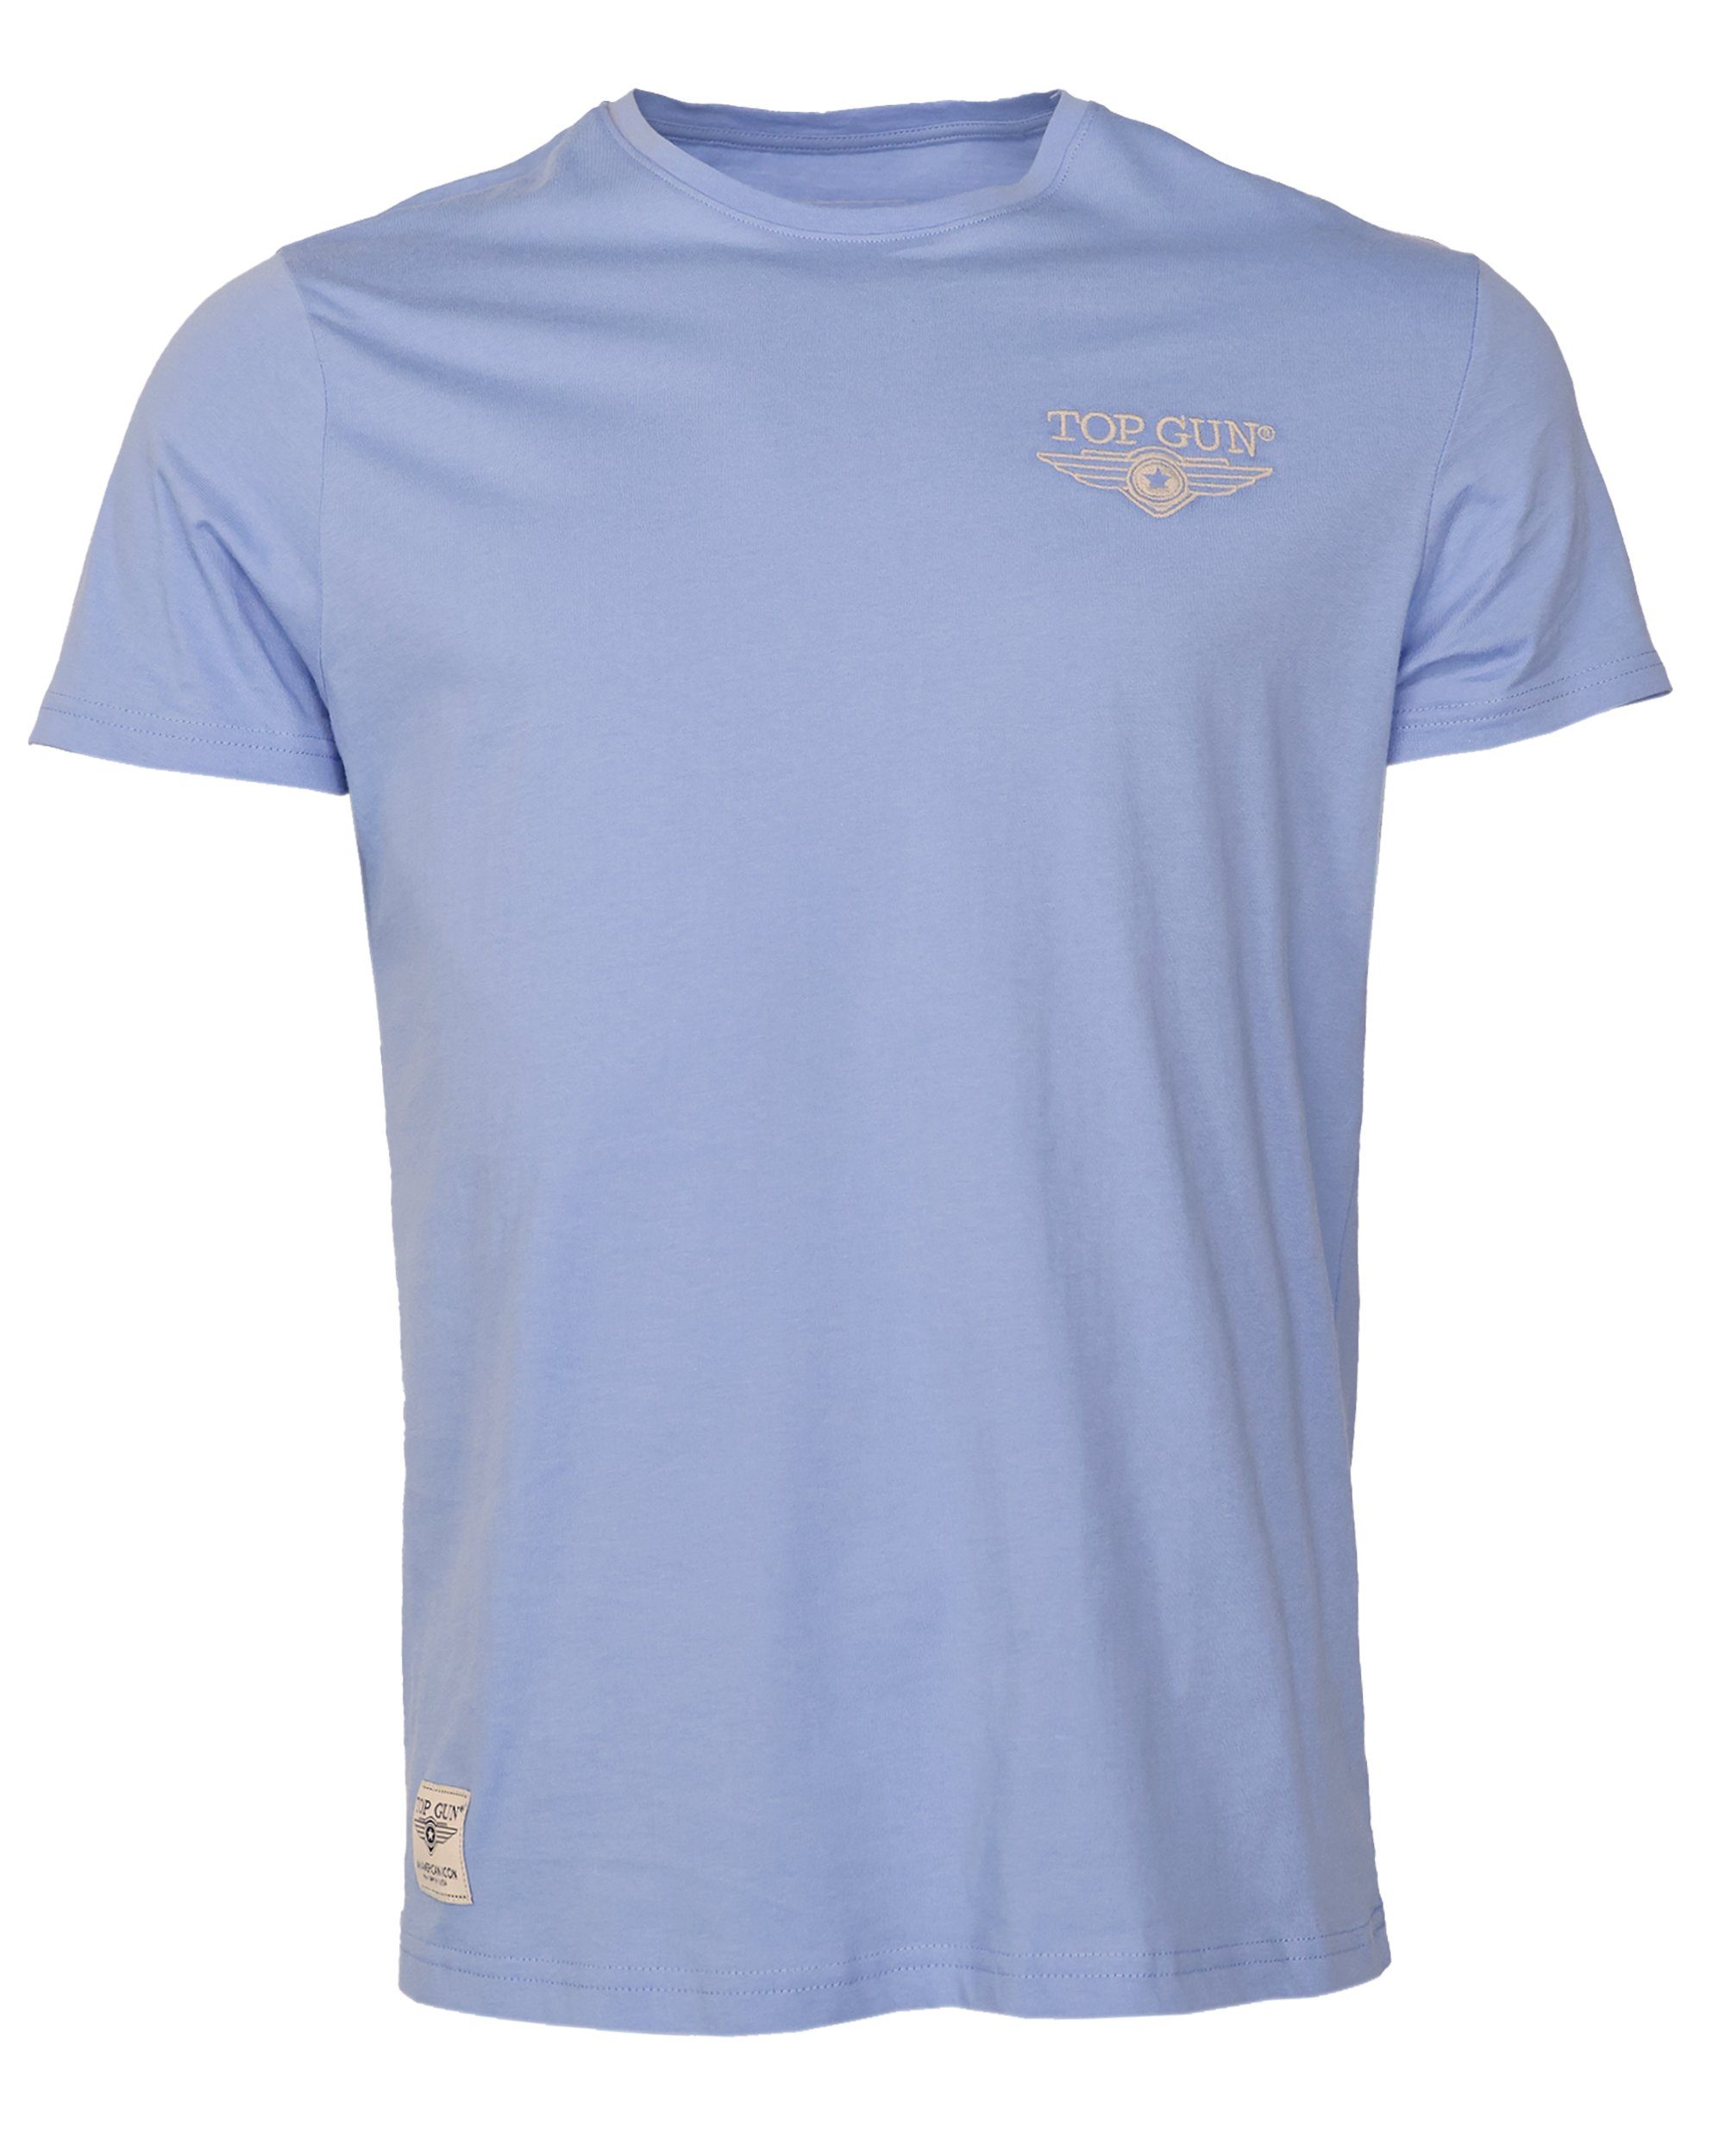 TOP GUN T-Shirt TG20213036 blue light